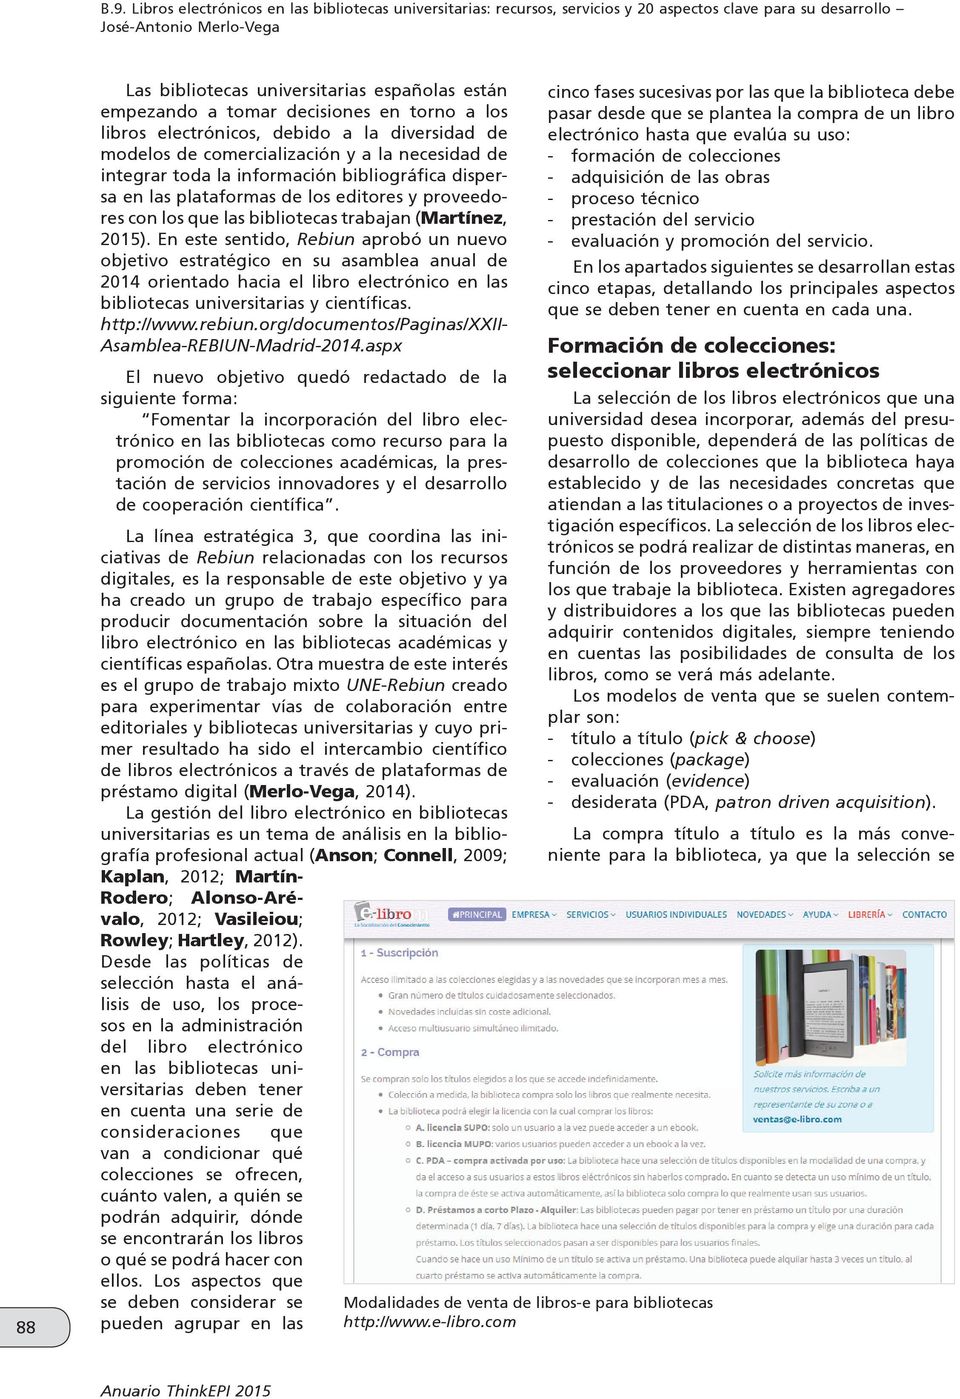 (Martínez, 2015). En este sentido, Rebiun aprobó un nuevo objetivo estratégico en su asamblea anual de 2014 orientado hacia el libro electrónico en las bibliotecas universitarias y científicas.